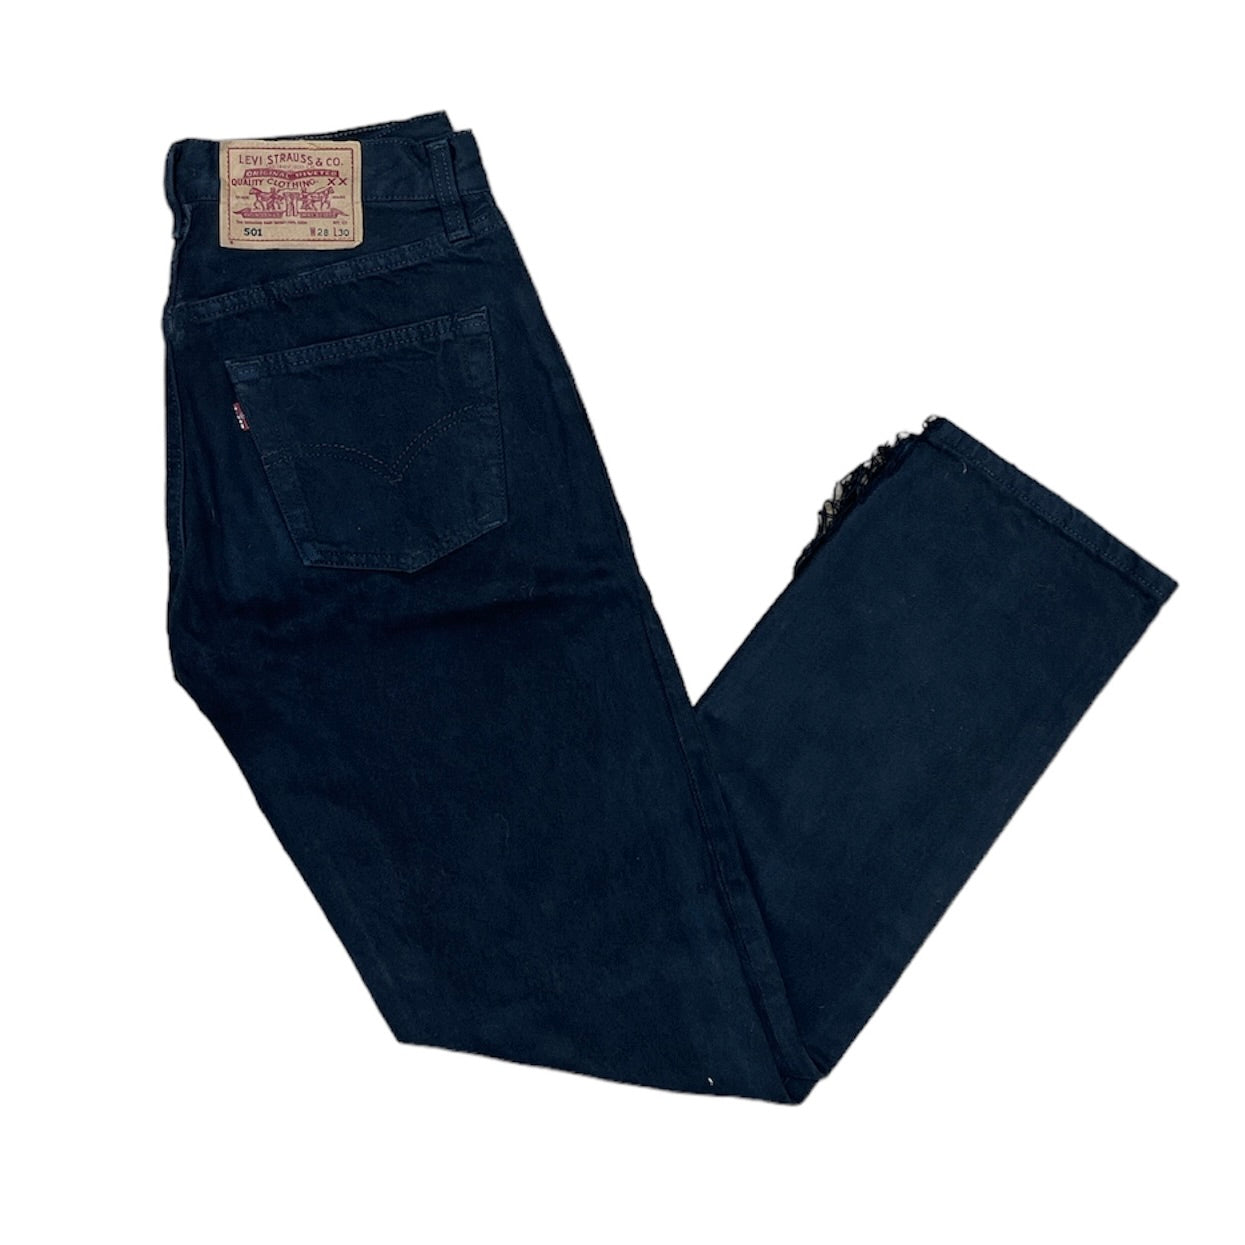 Vintage Levis 501 Black Jeans (W28/30)